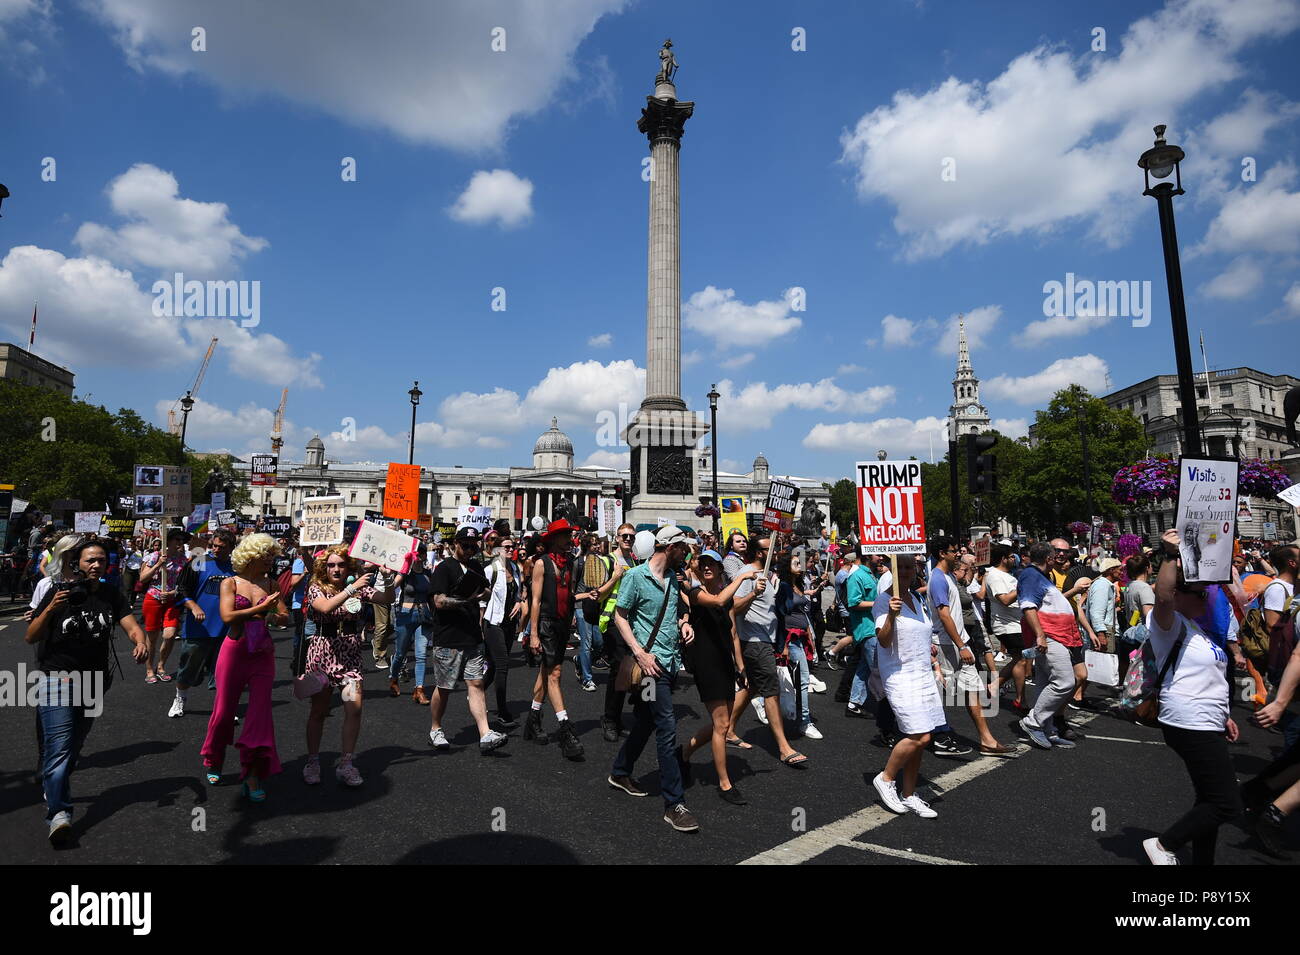 Dimostranti a Trafalgar Square, London, prendere parte a manifestazioni di protesta contro la visita del Presidente americano Donald Trump AL REGNO UNITO. Foto Stock